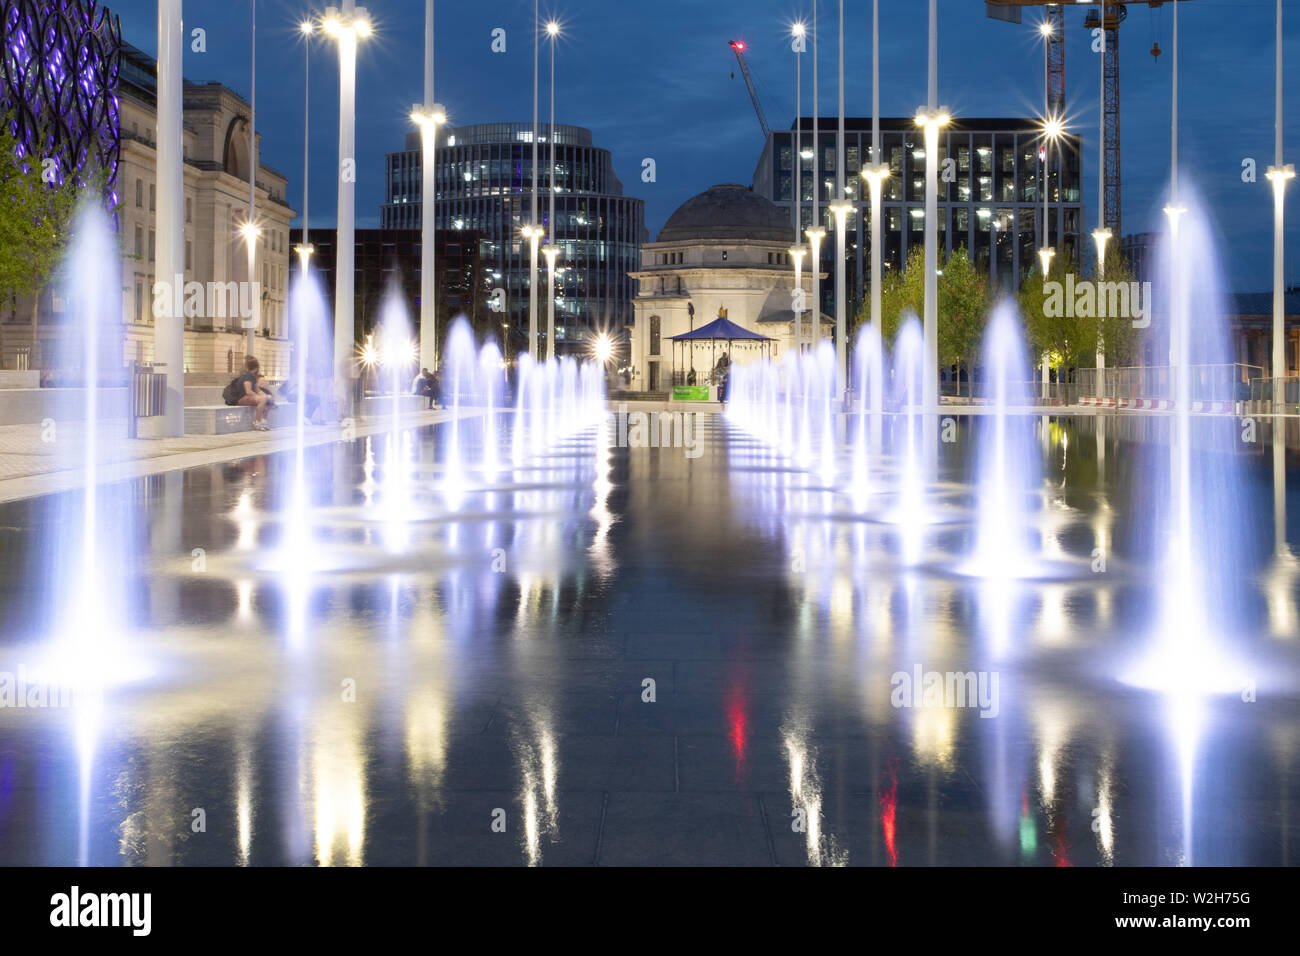 Centenary Square Birmingham. Les panneaux publicitaires ont été supprimés en juillet 2019 pour révéler des fontaines et un miroir d'eau. Banque D'Images